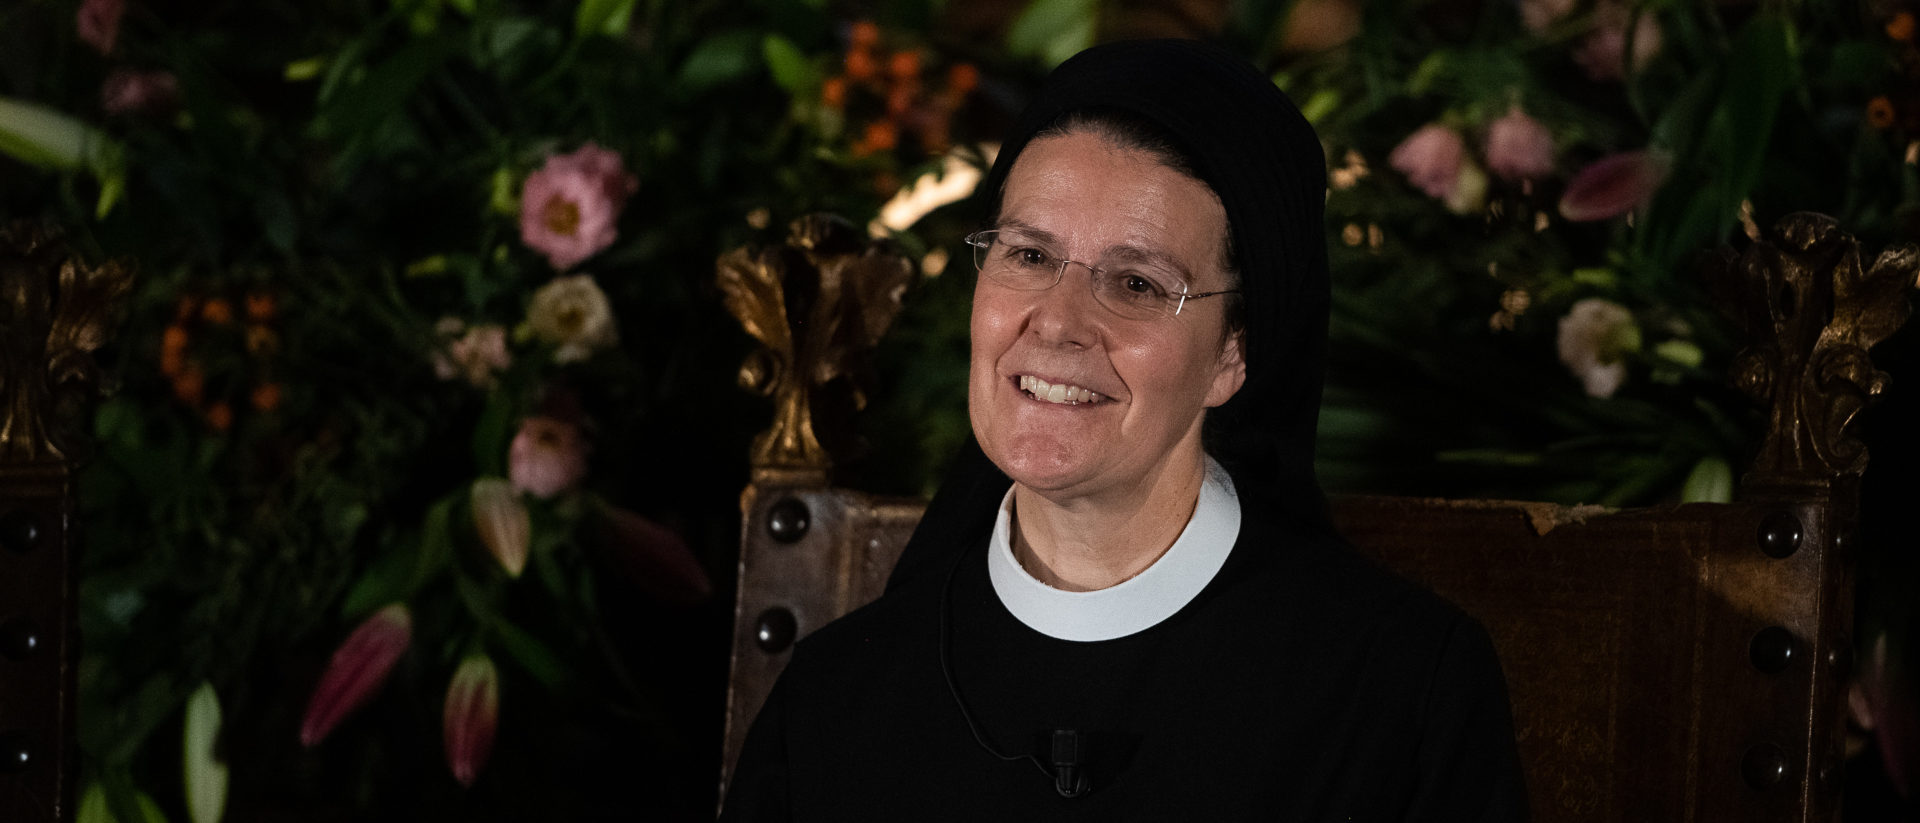 Ein Bischof könnte einer kirchlich bewährten Frau die Erlaubnis für das Spenden eines klar definierten Sakraments durchaus erteilen, sagte Priorin Irene Gassmann.